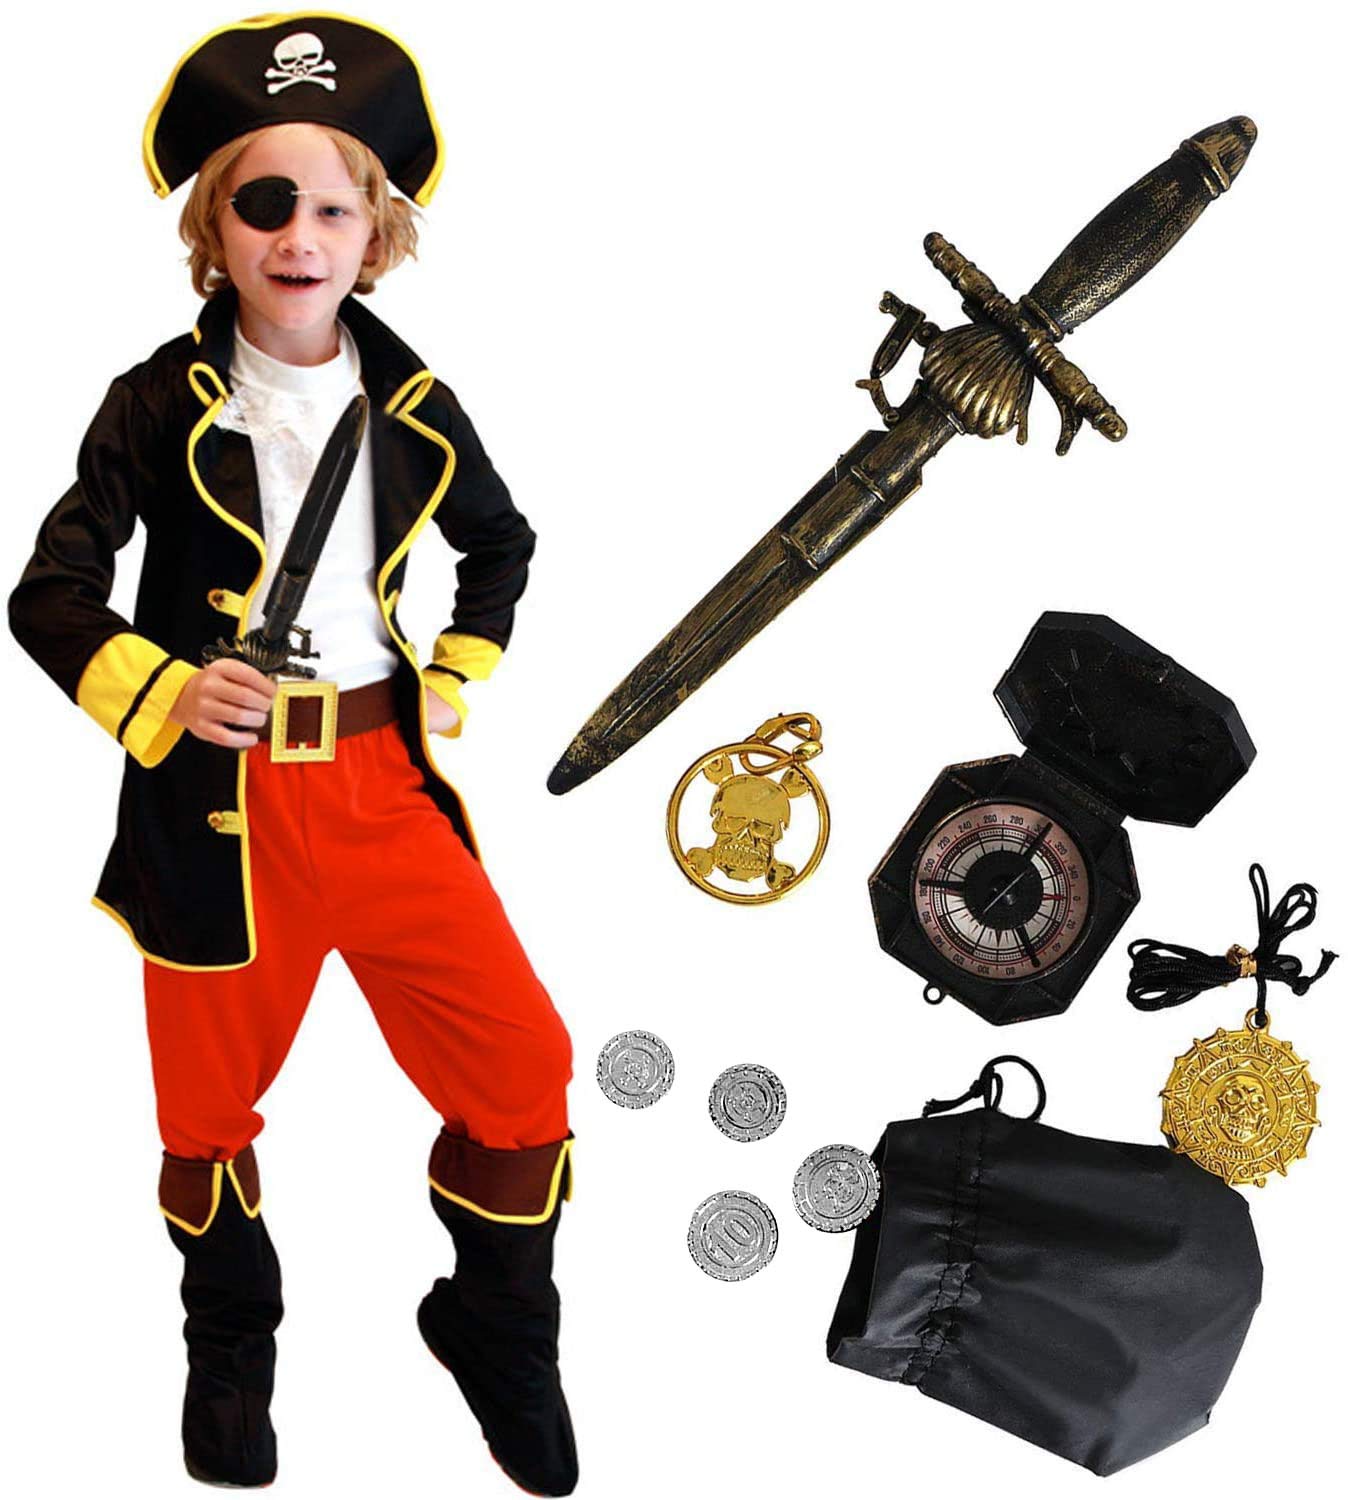 Tacobear Piratenkostüm Kinder mit Piraten Zubehöre Piraten Augenklappe Kompass Geldbeutel Ohrring Gold medasie Kinder Piraten Fancy Dress Halloween Karneval Kostüm für Kinder Jungen